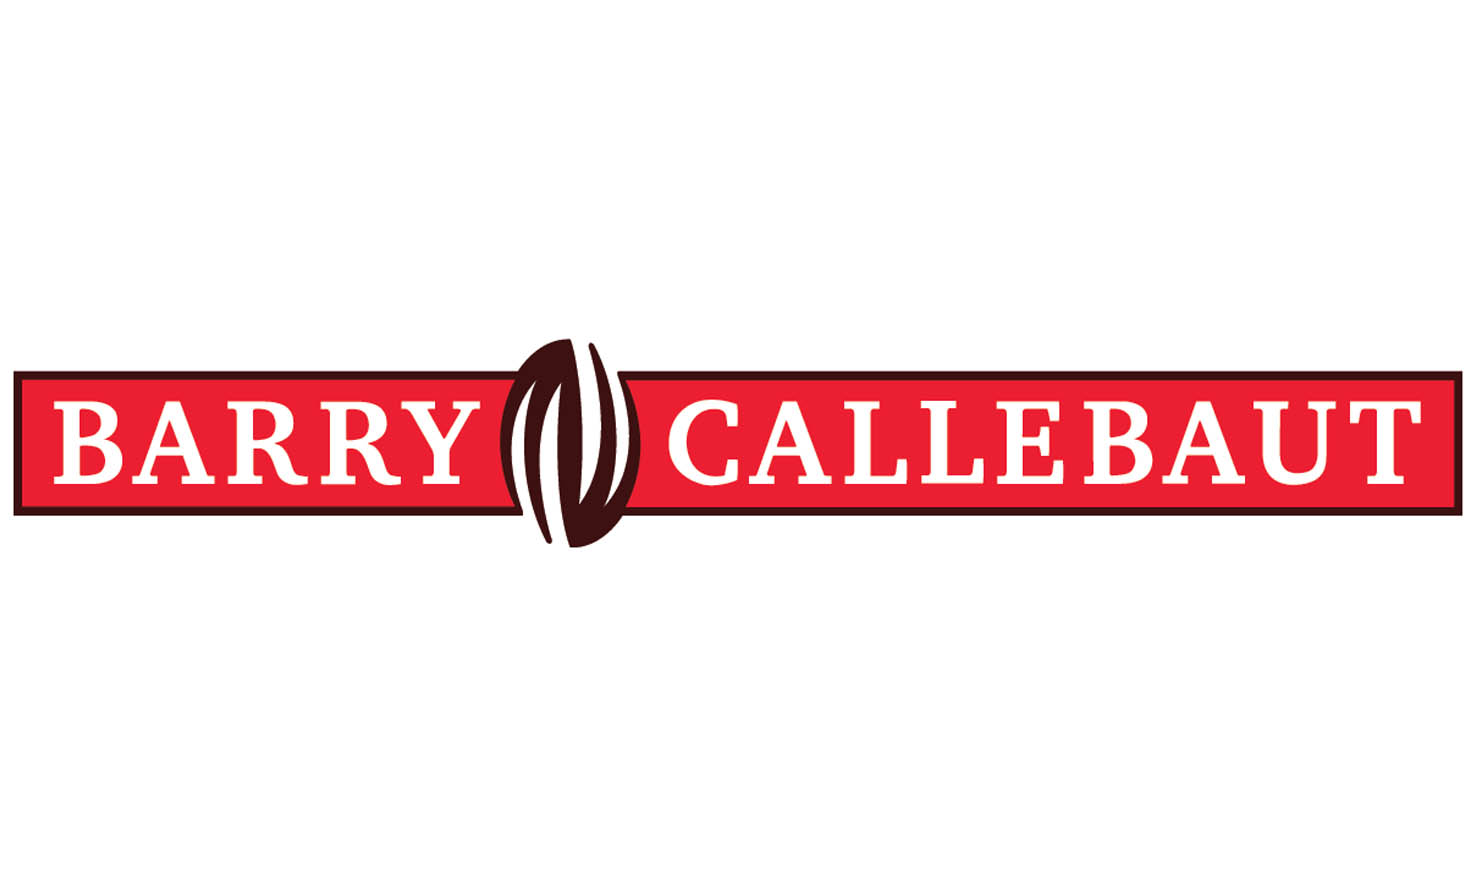 Barry Callebaut AG